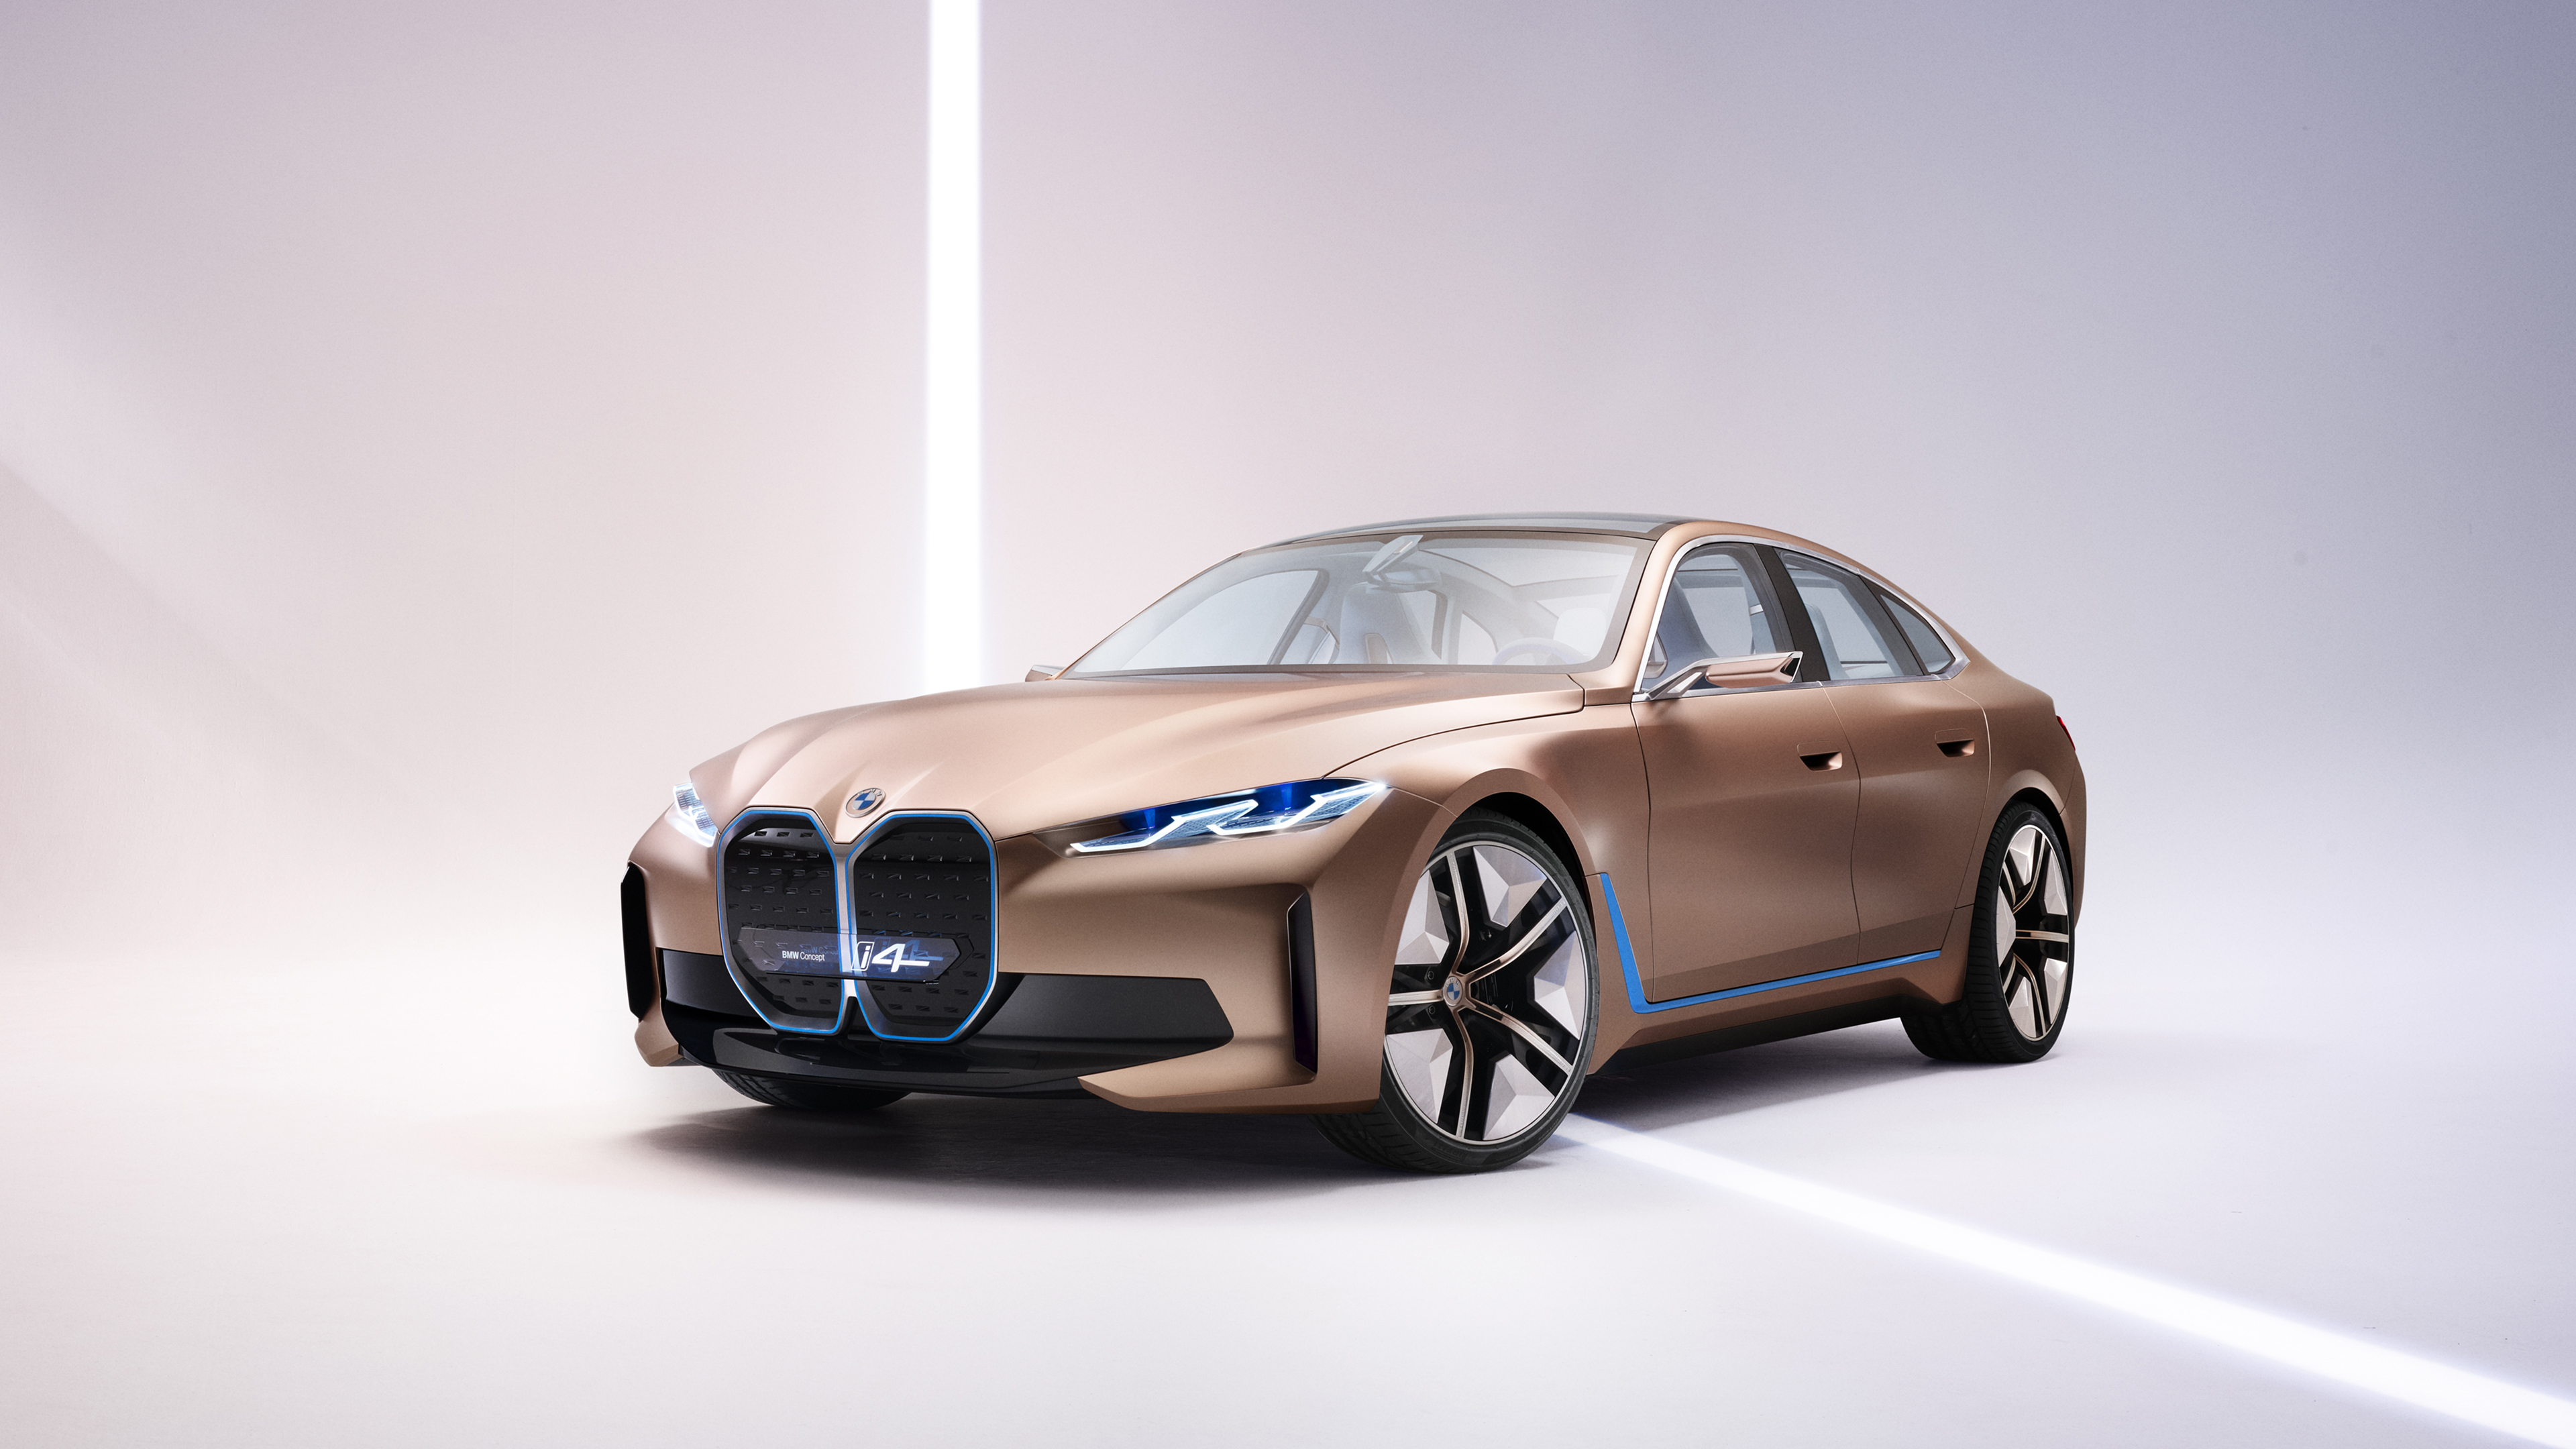 HD wallpaper: BMW concept car, art drawing | Wallpaper Flare